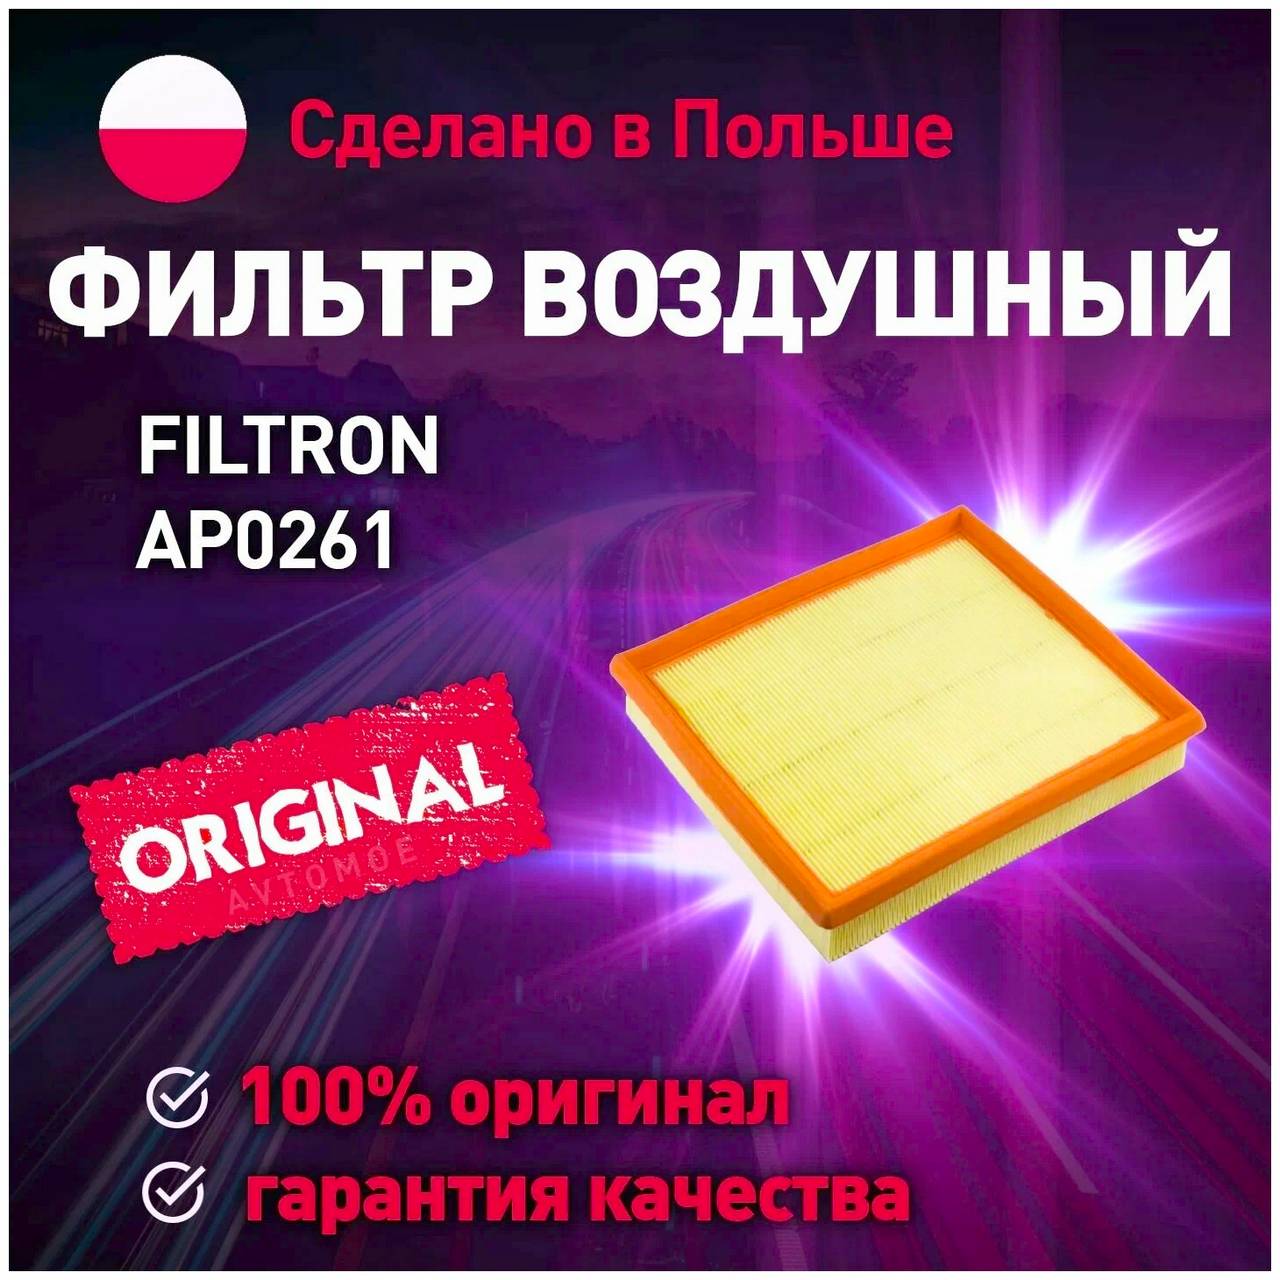 Фильтр воздушный FILTRON AP 026/1